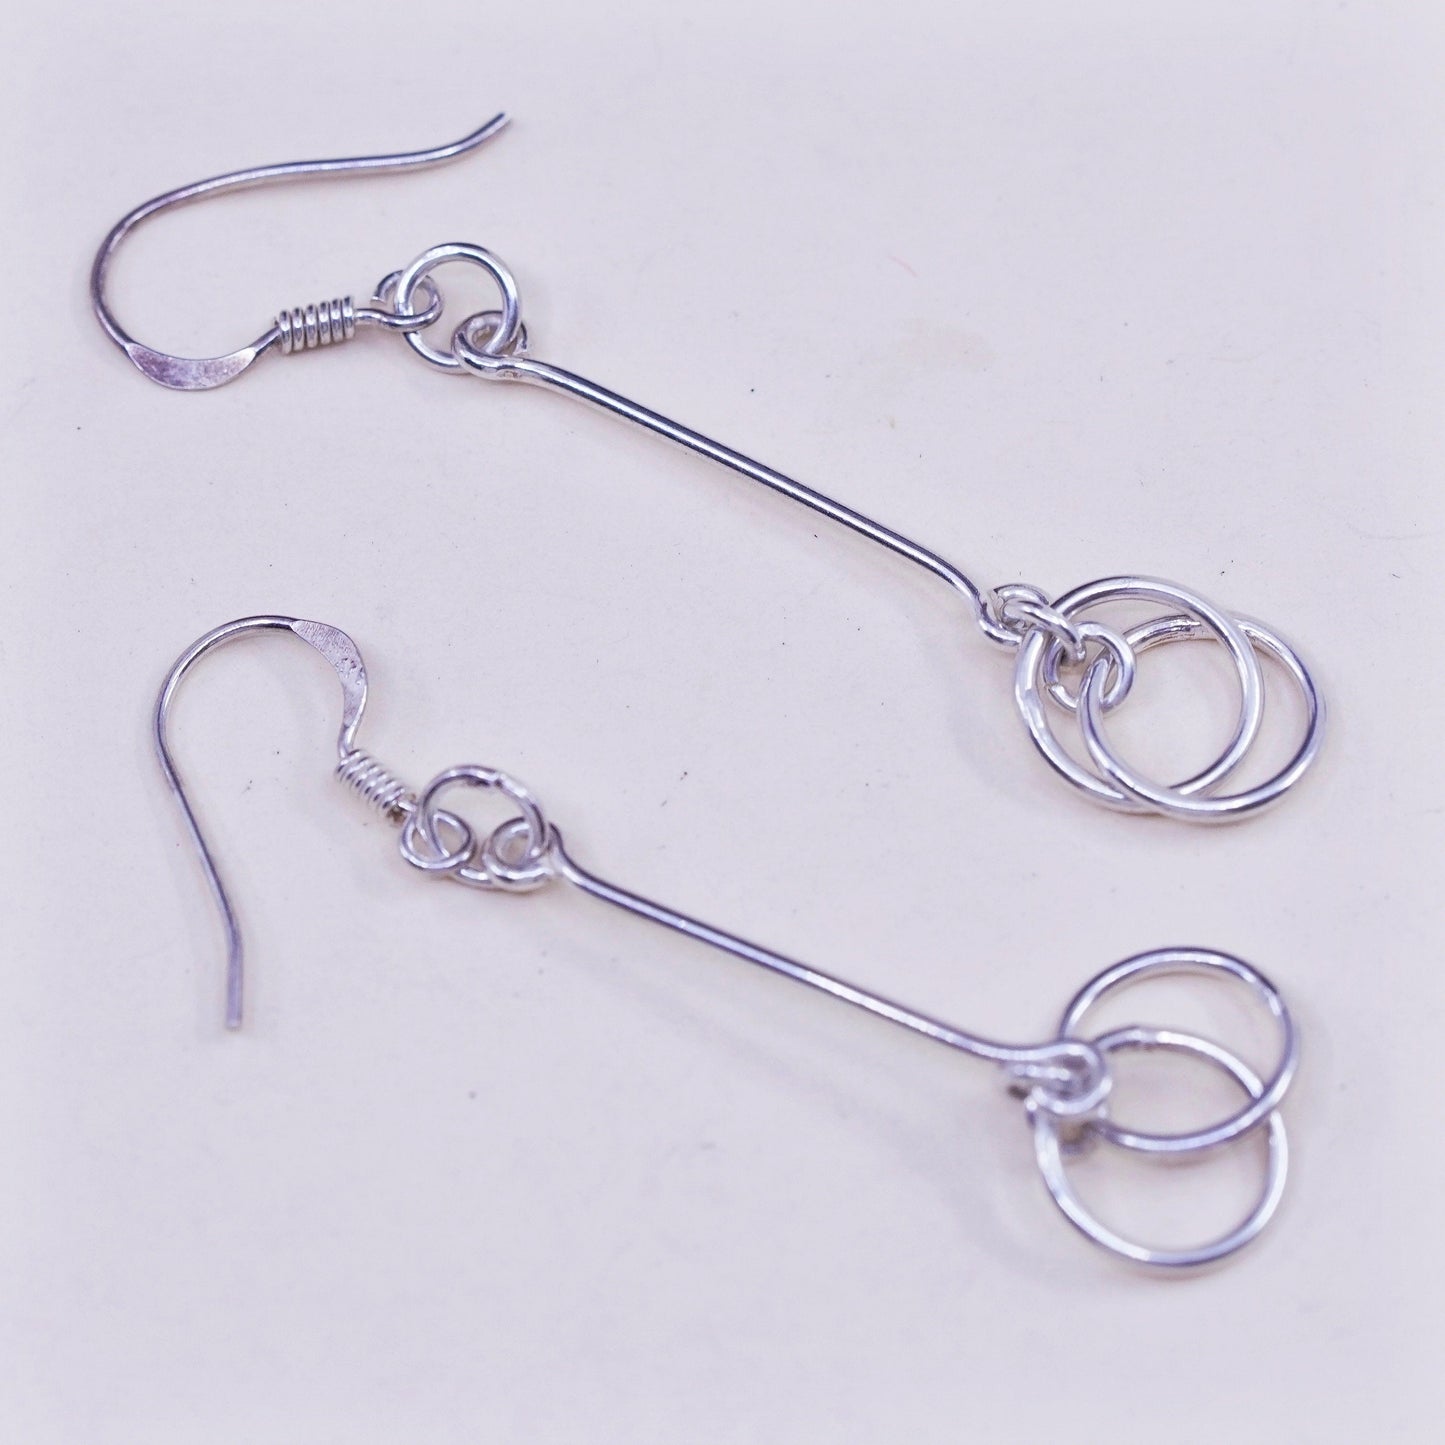 Vintage sterling silver handmade earrings, 925 hammered circle dangles